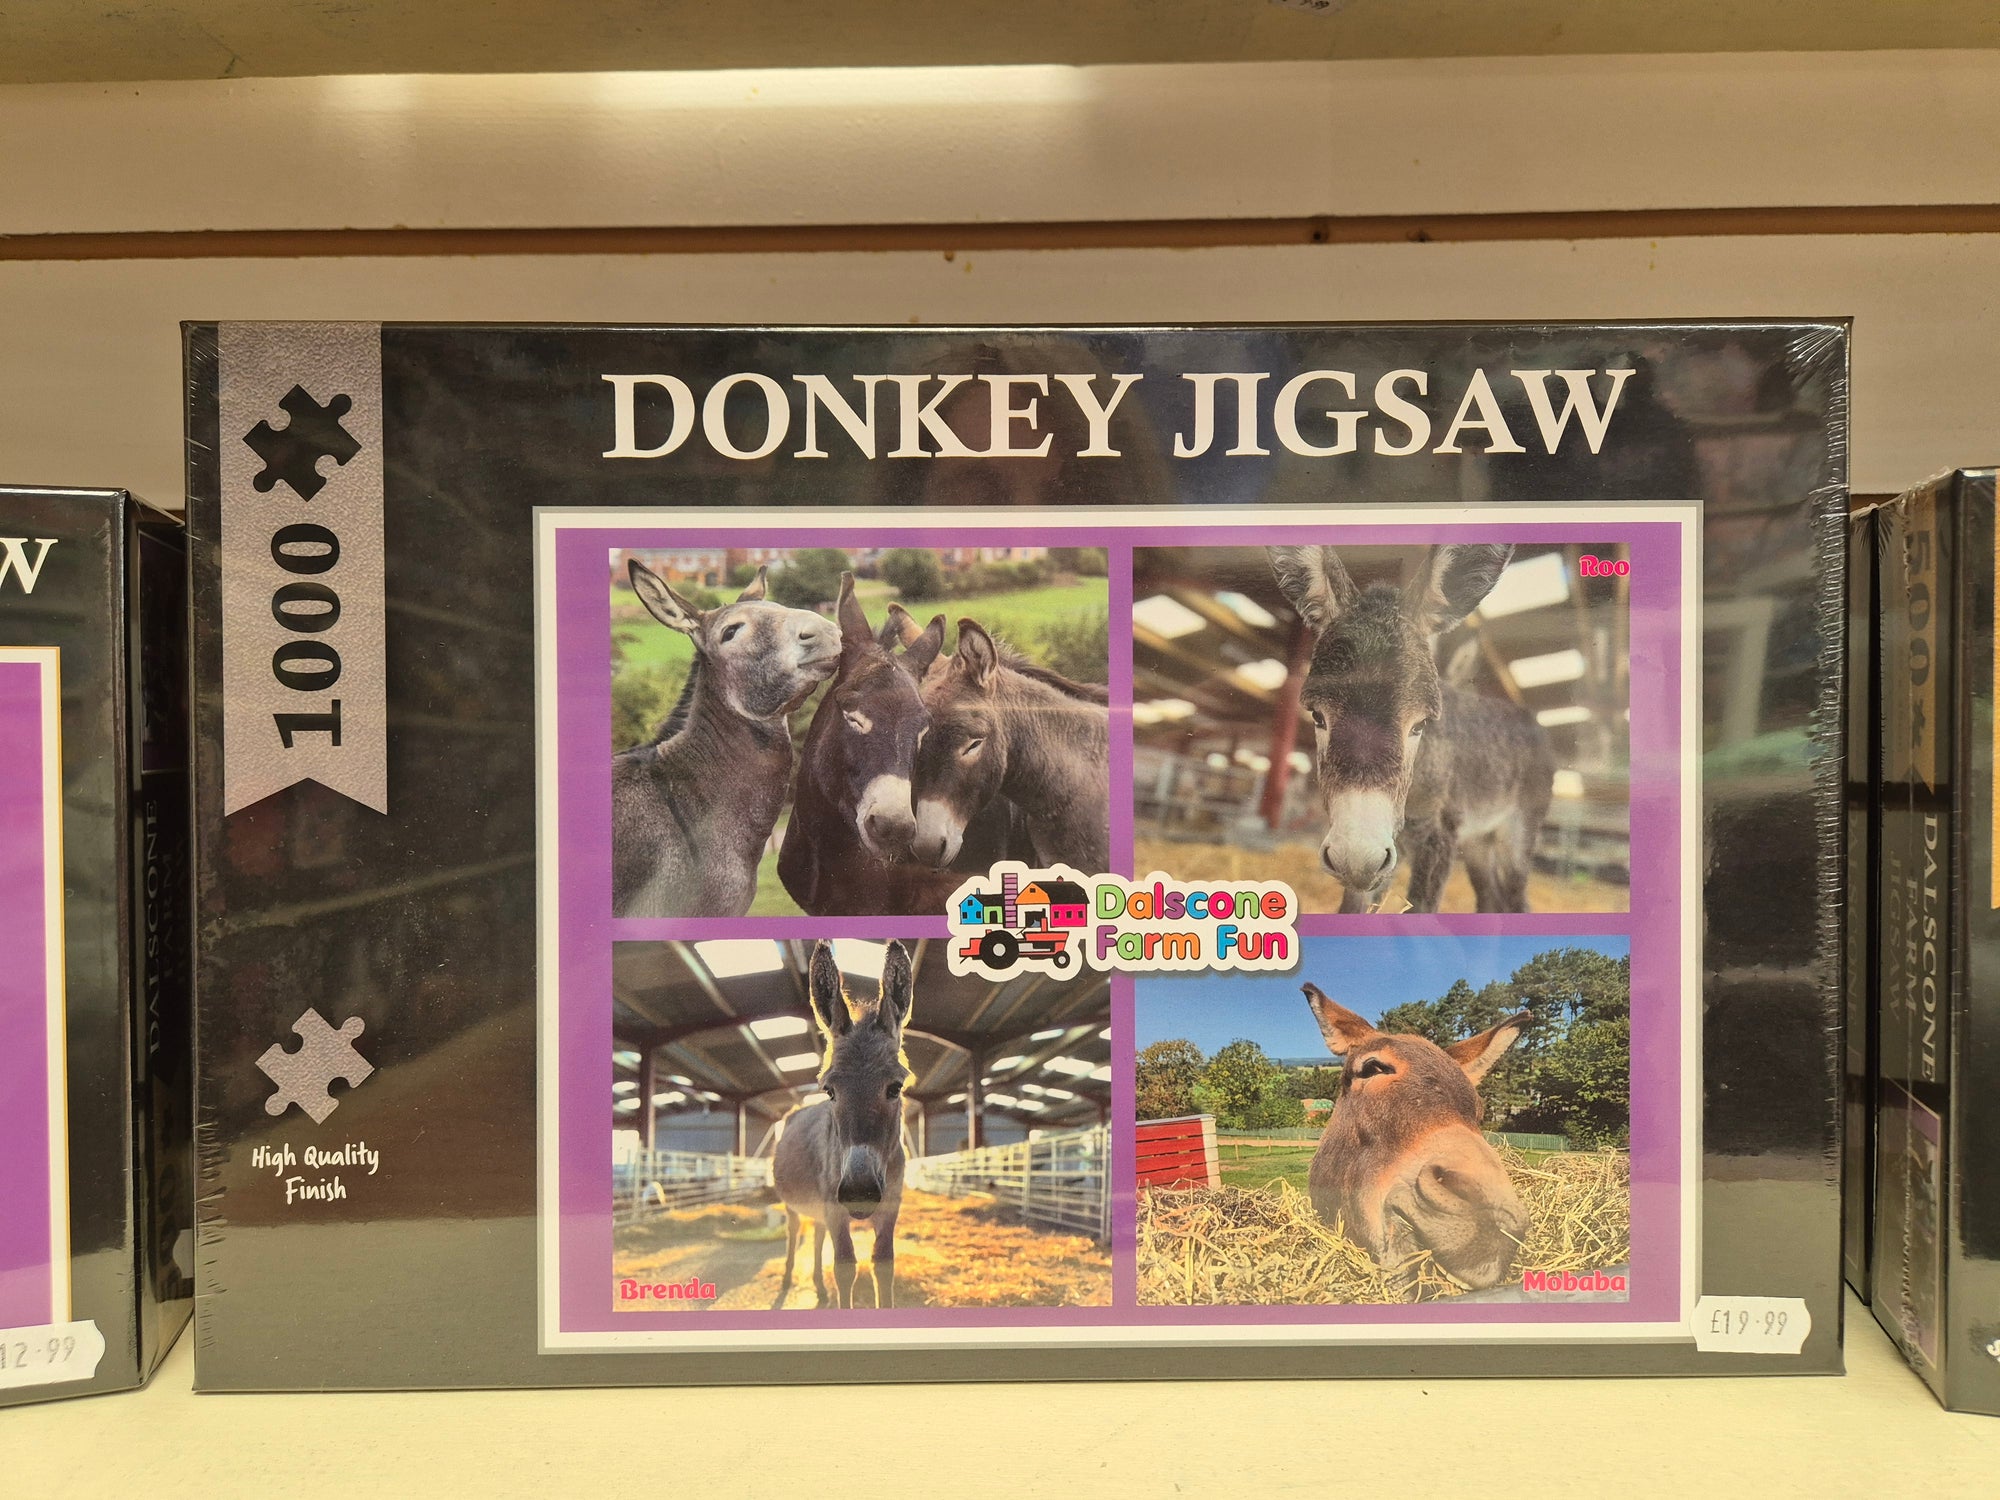 Dalscone Donkey Jigsaw - 1000 piece